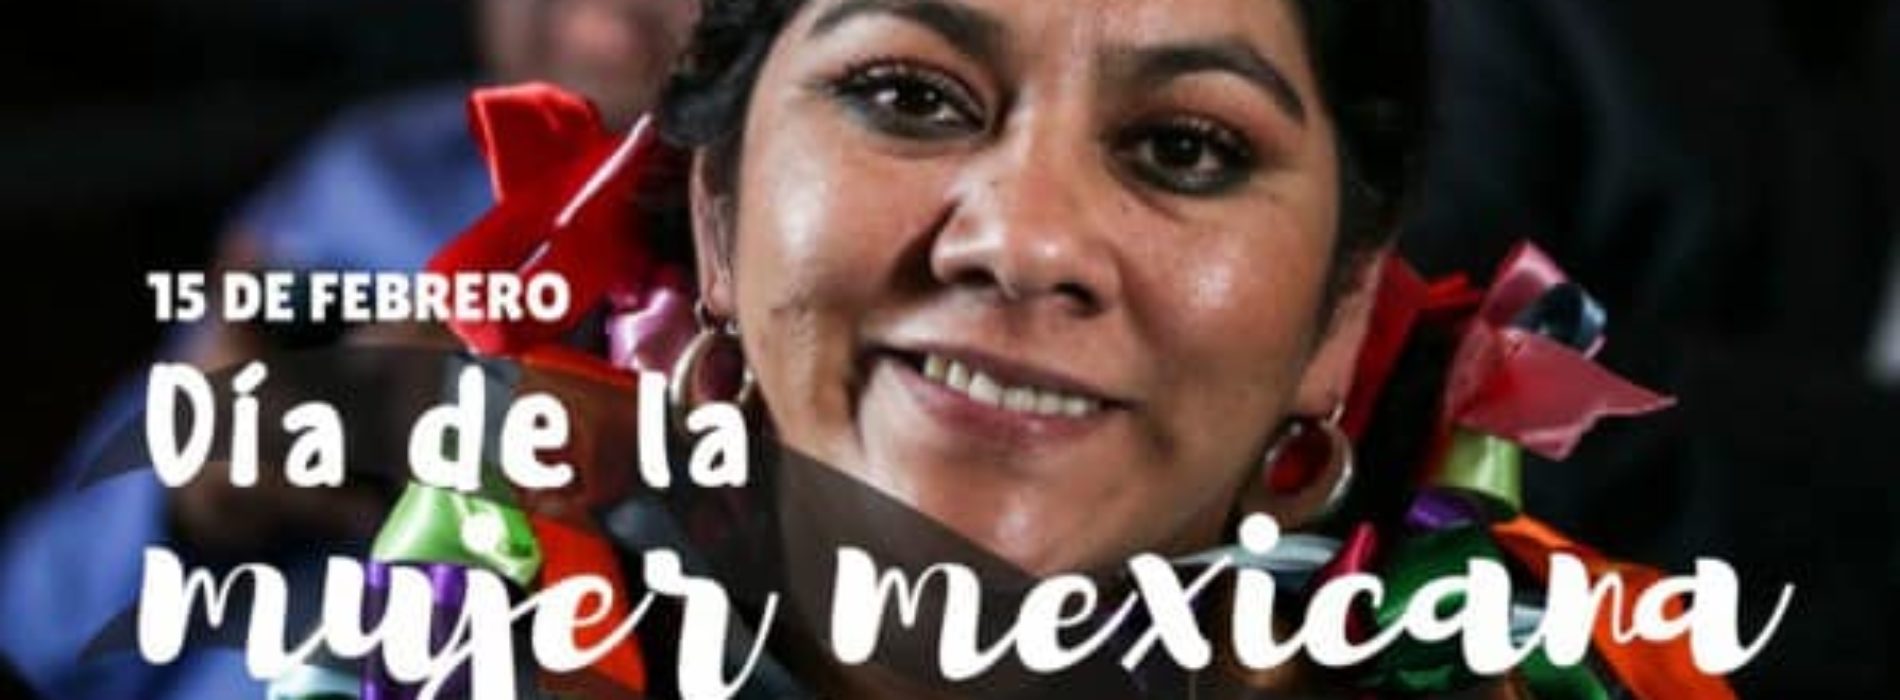 Día de la mujer mexicana